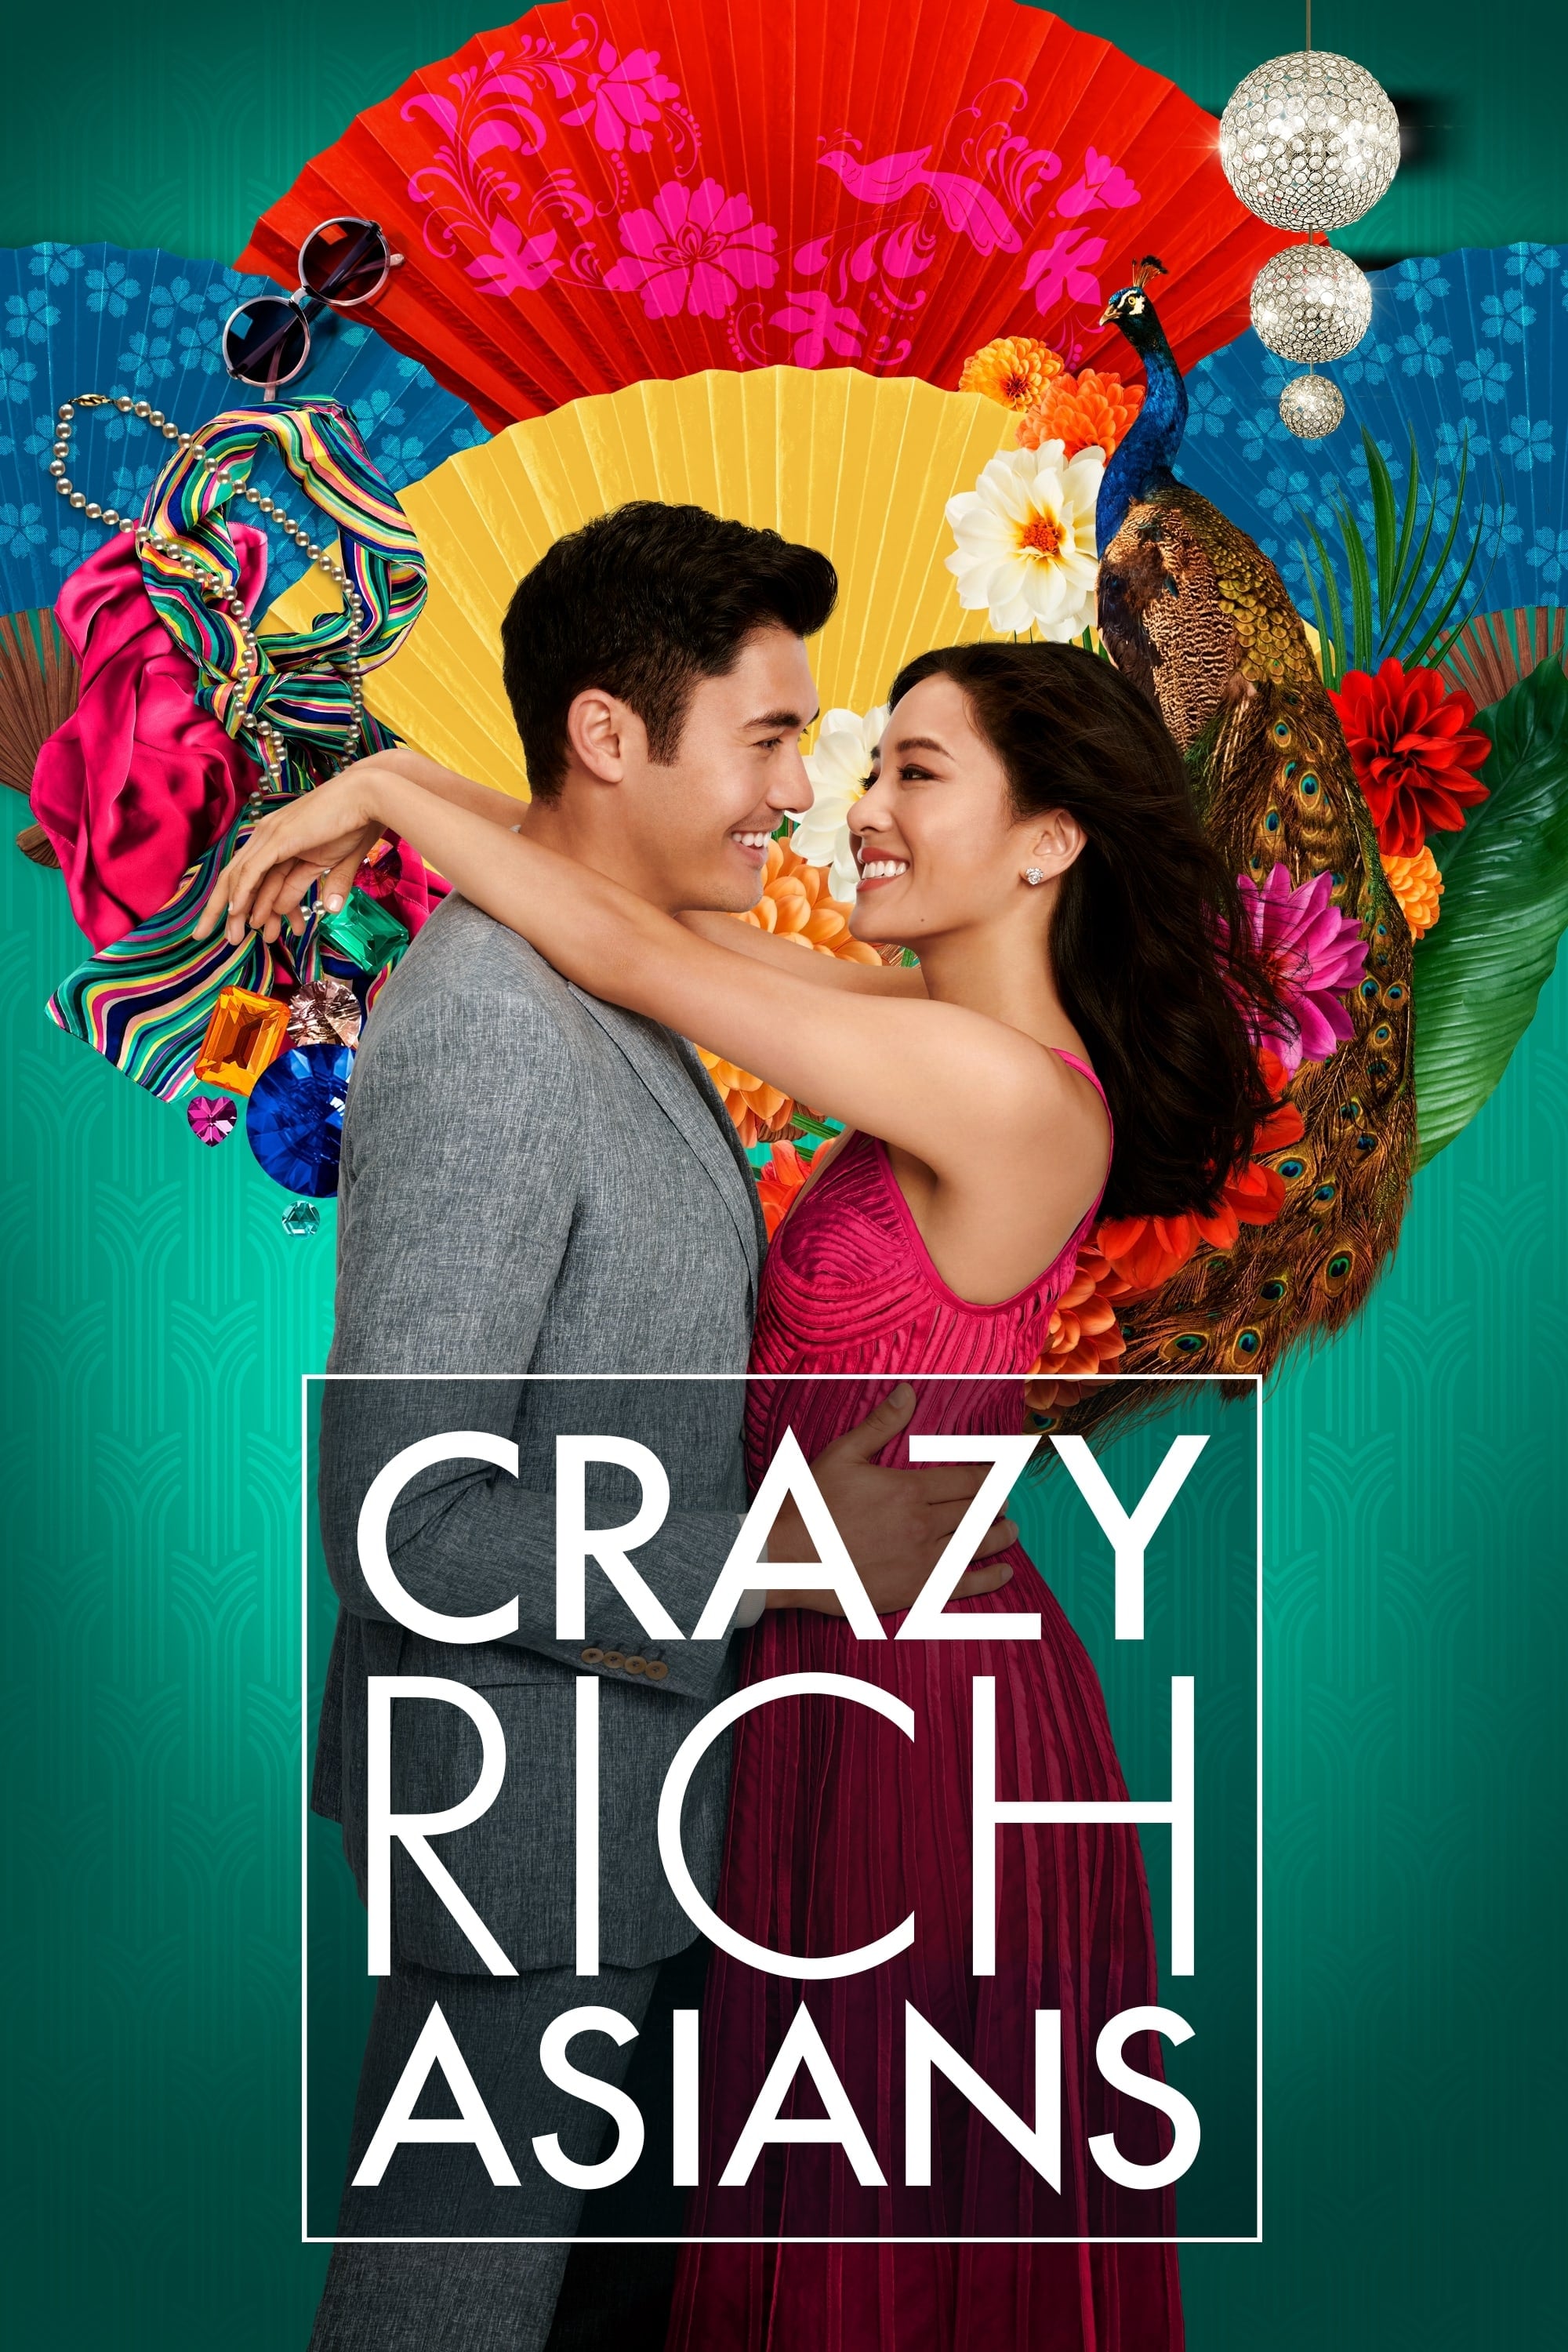 Mua hộ sách "Crazy Rich Asians" từ Singapore về Đà Nẵng - Giá rẻ